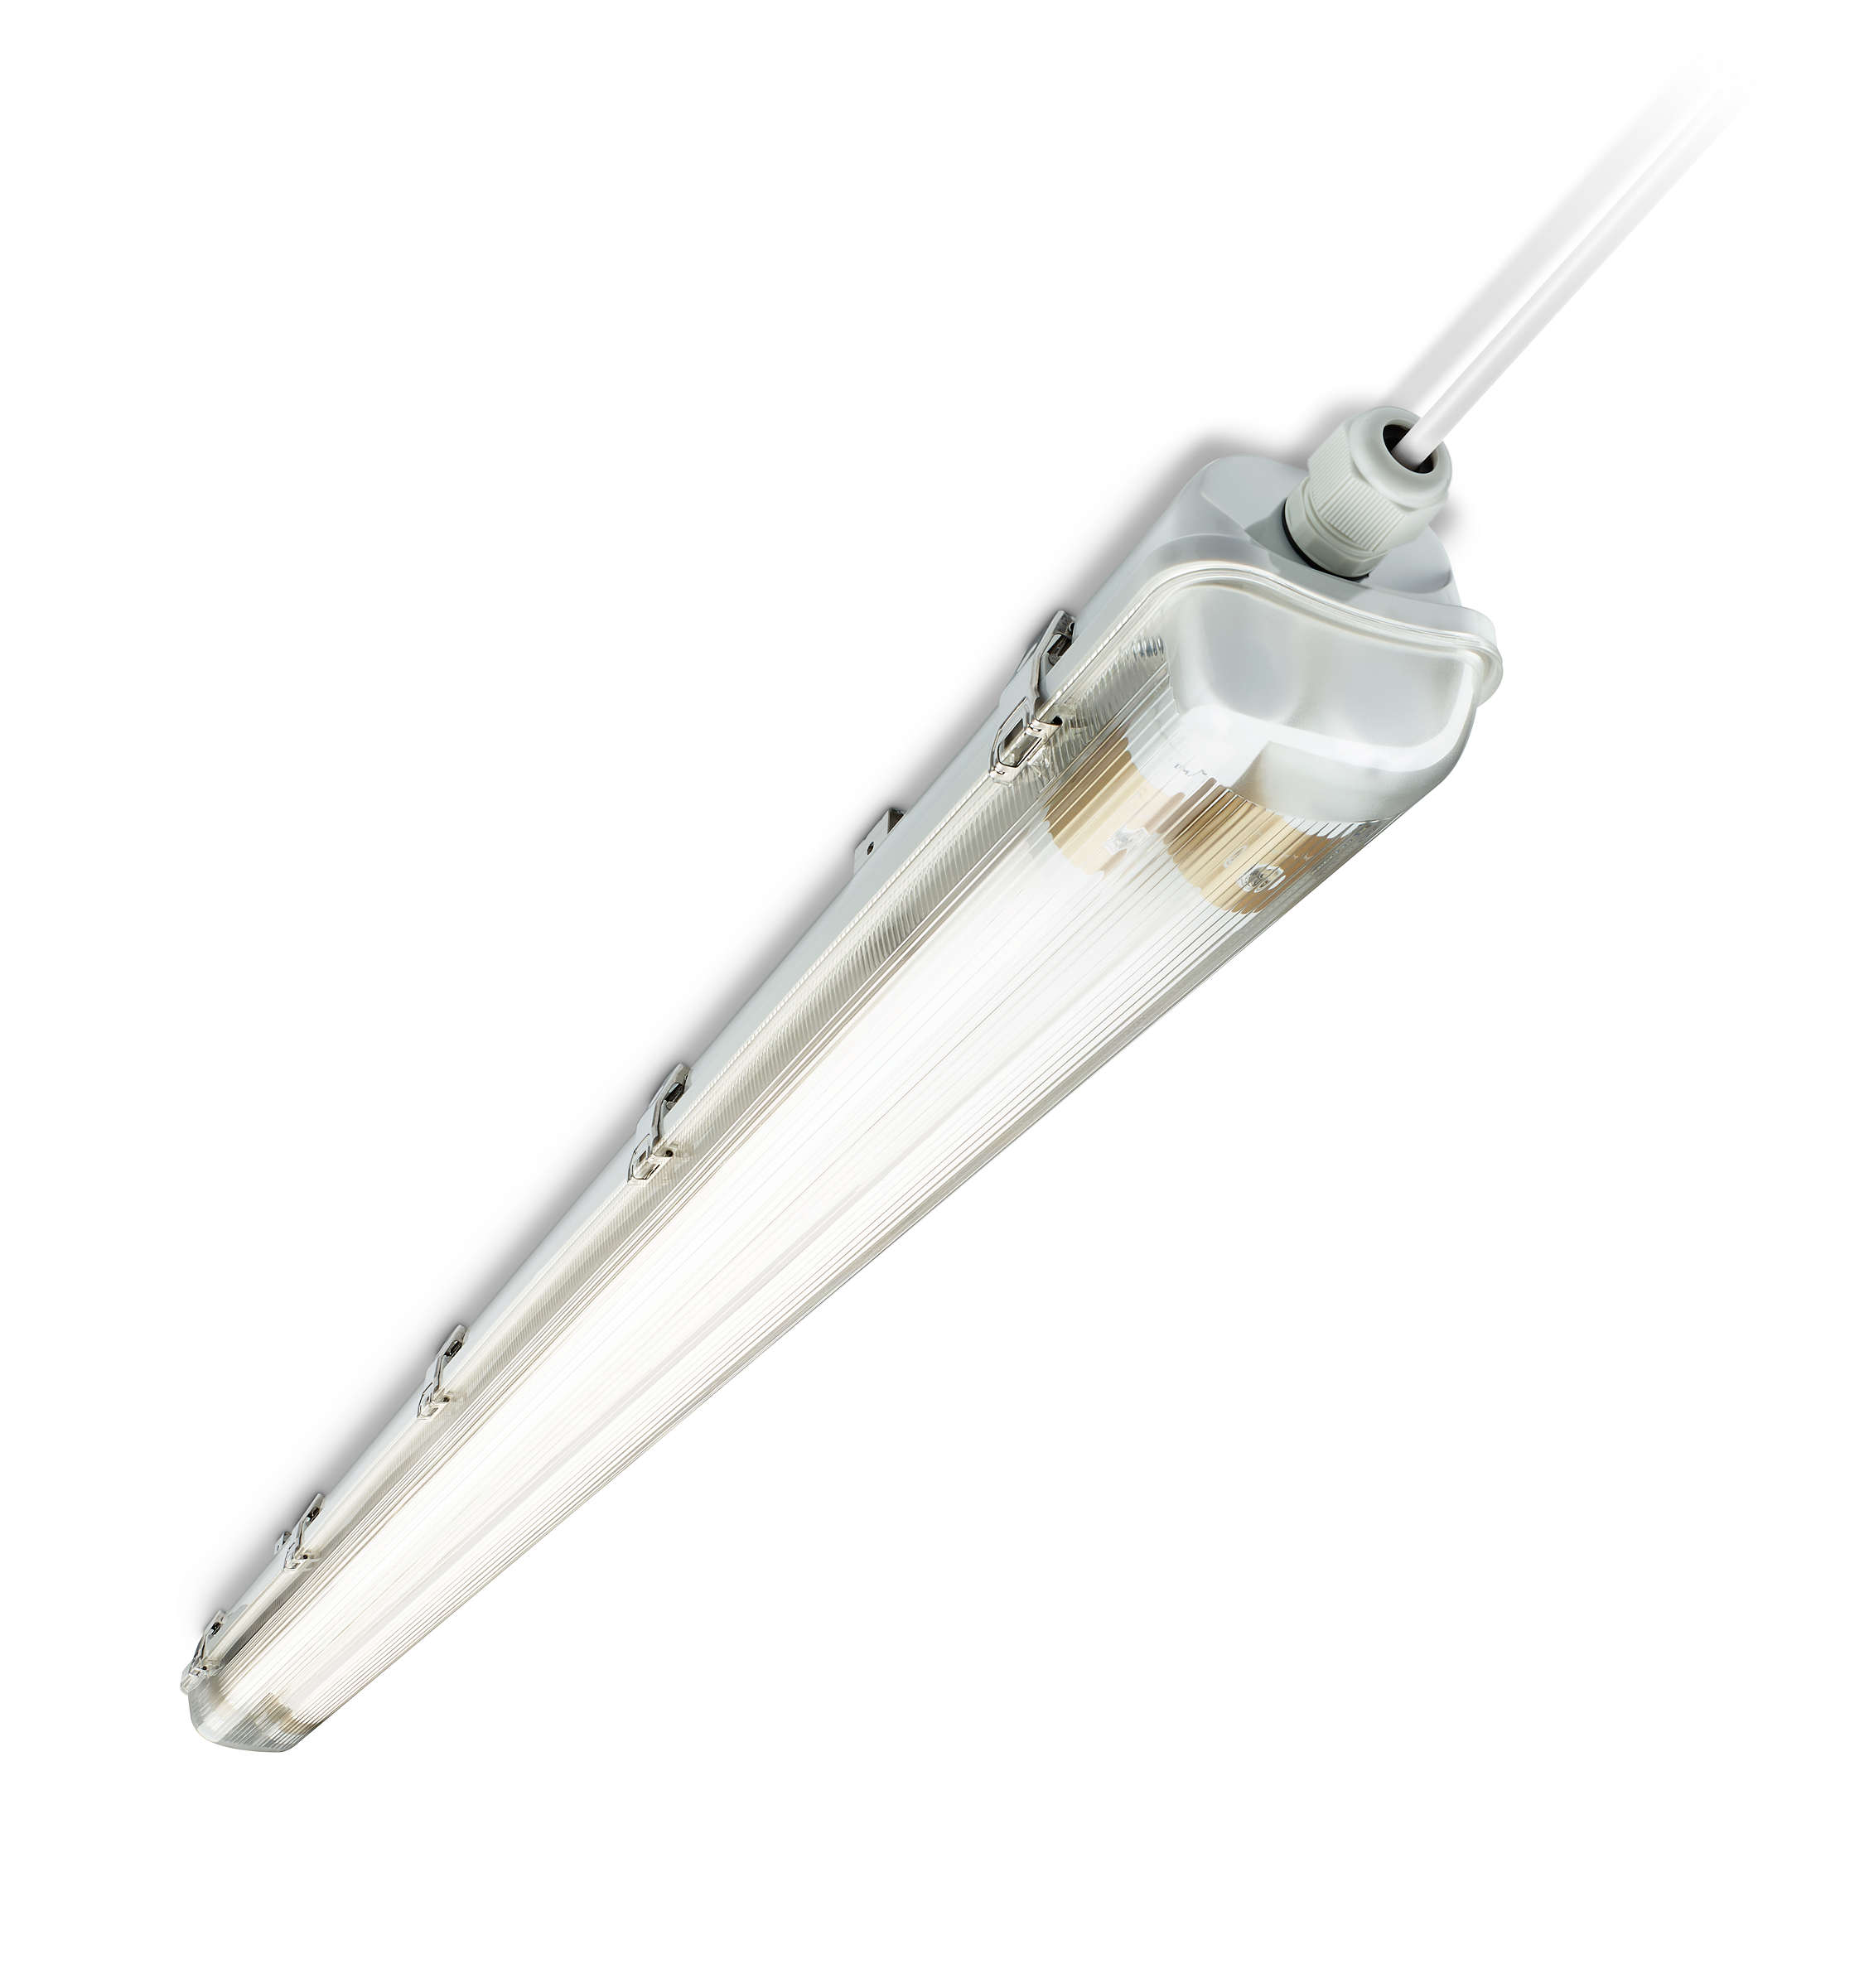 Hermetyczna oprawa Ledinaire do instalacji tub LED. Zamiennik LED konwencjonalnych opraw TCW060